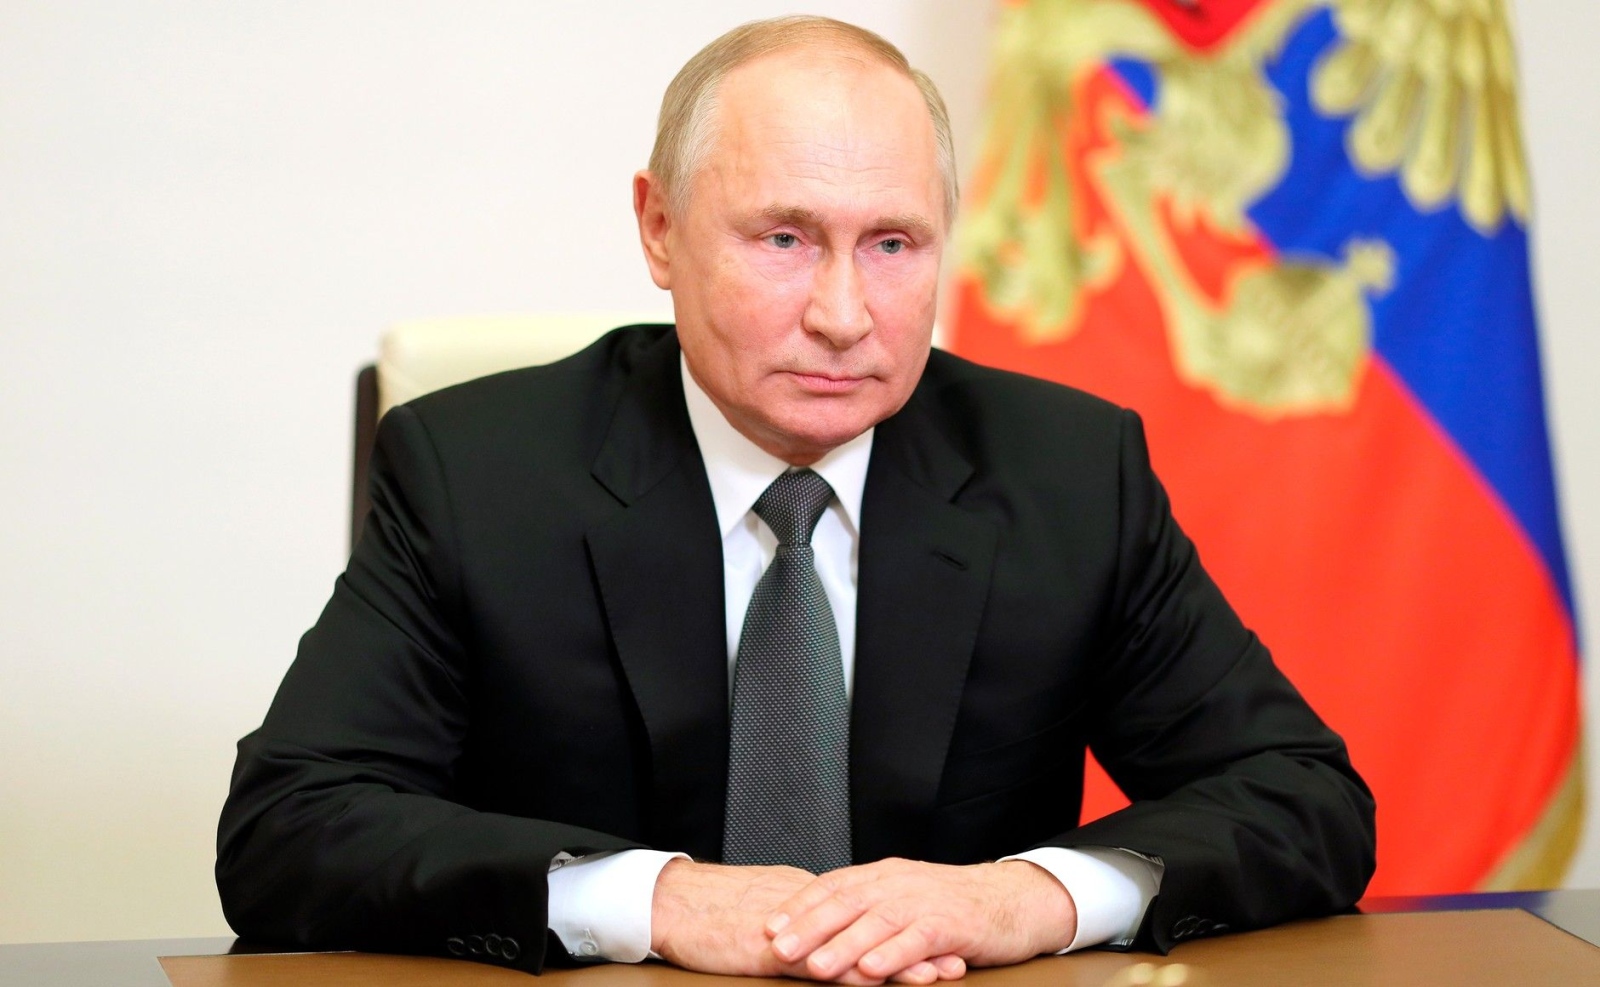 Руският президент Владимир Путин наблюдава българските избори с интерес пише